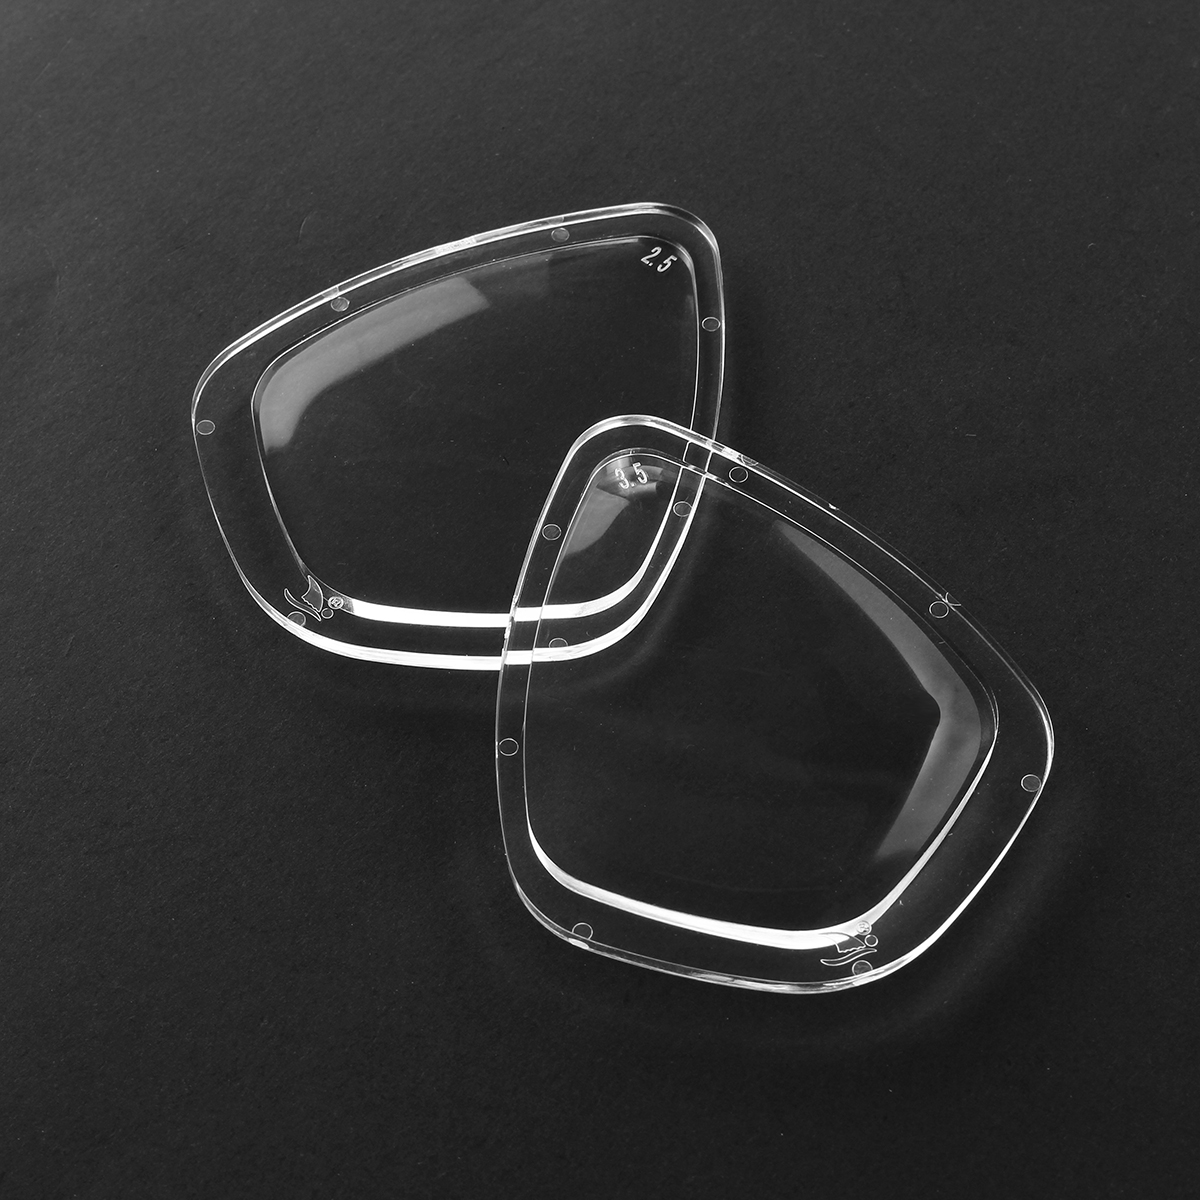 Transparent-Resin-Universal-Swimming-Diving-Shortsightedness-Glasses-Myopia-Len-Lens-1474744-3